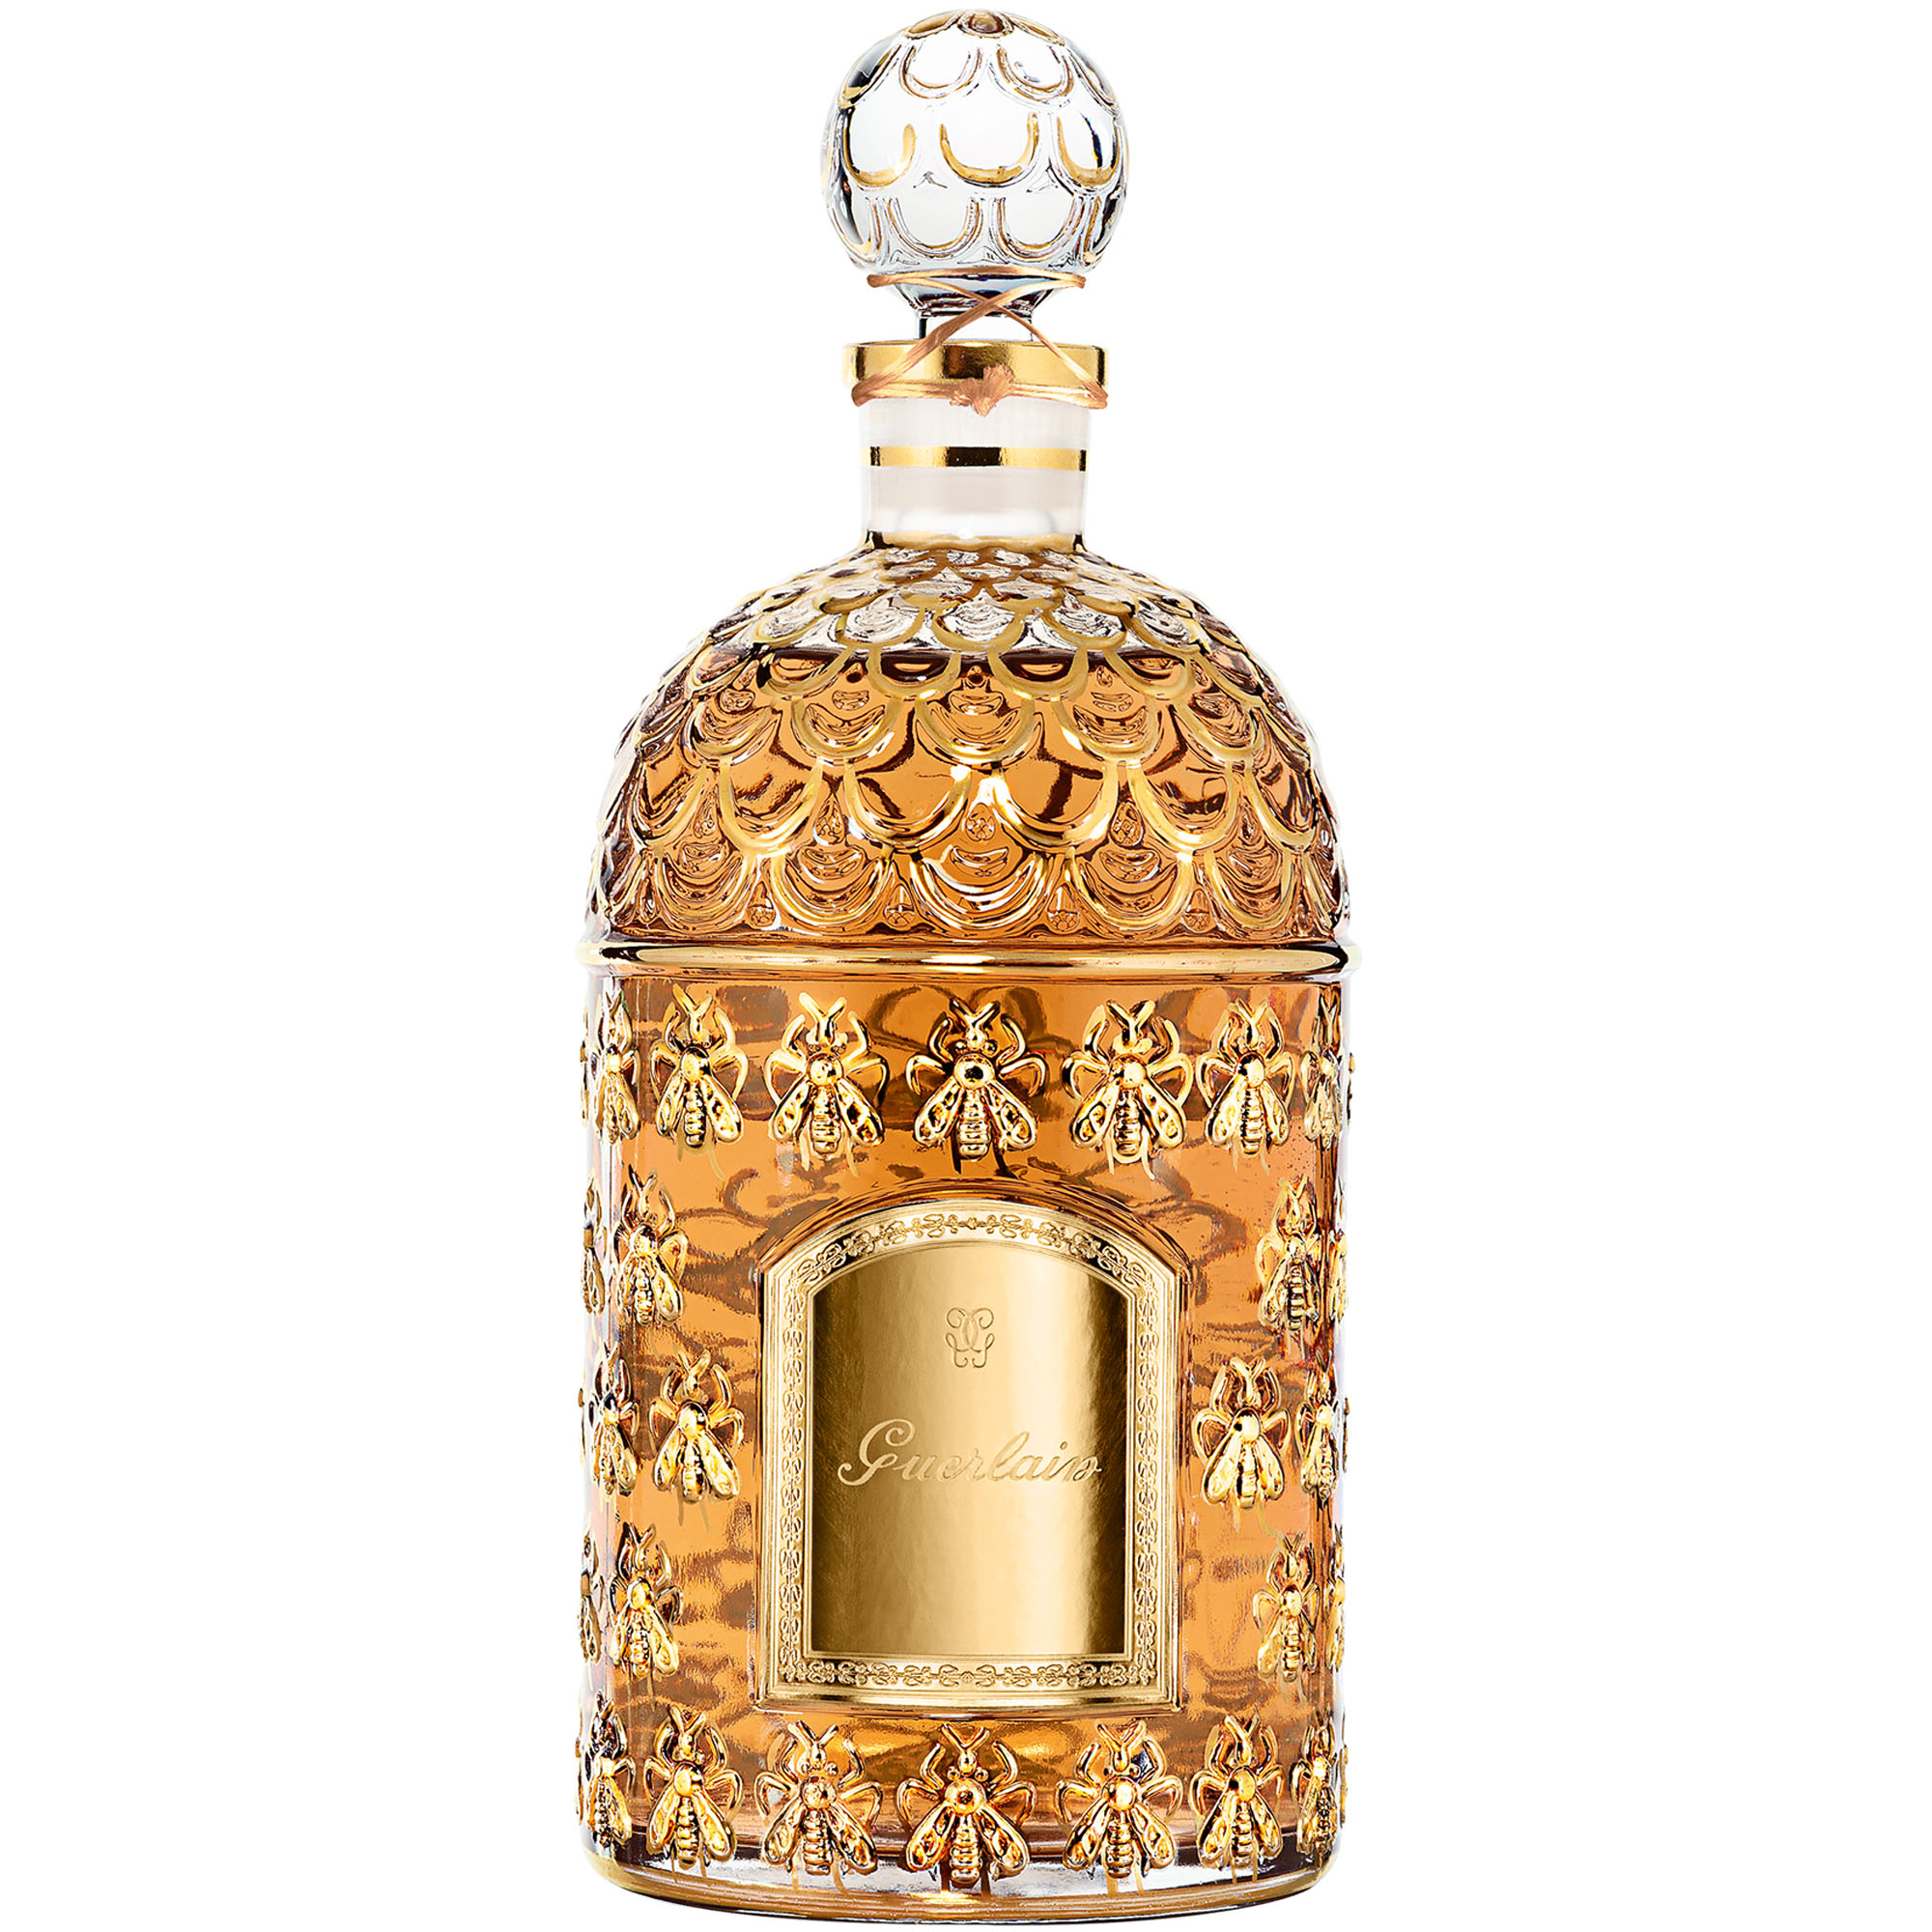 Si te gustan los objetos exclusivos y con mucha historia, no puede faltar en tu tocador uno de los perfumes míticos, cuyo frasco además es una auténtica joya. 